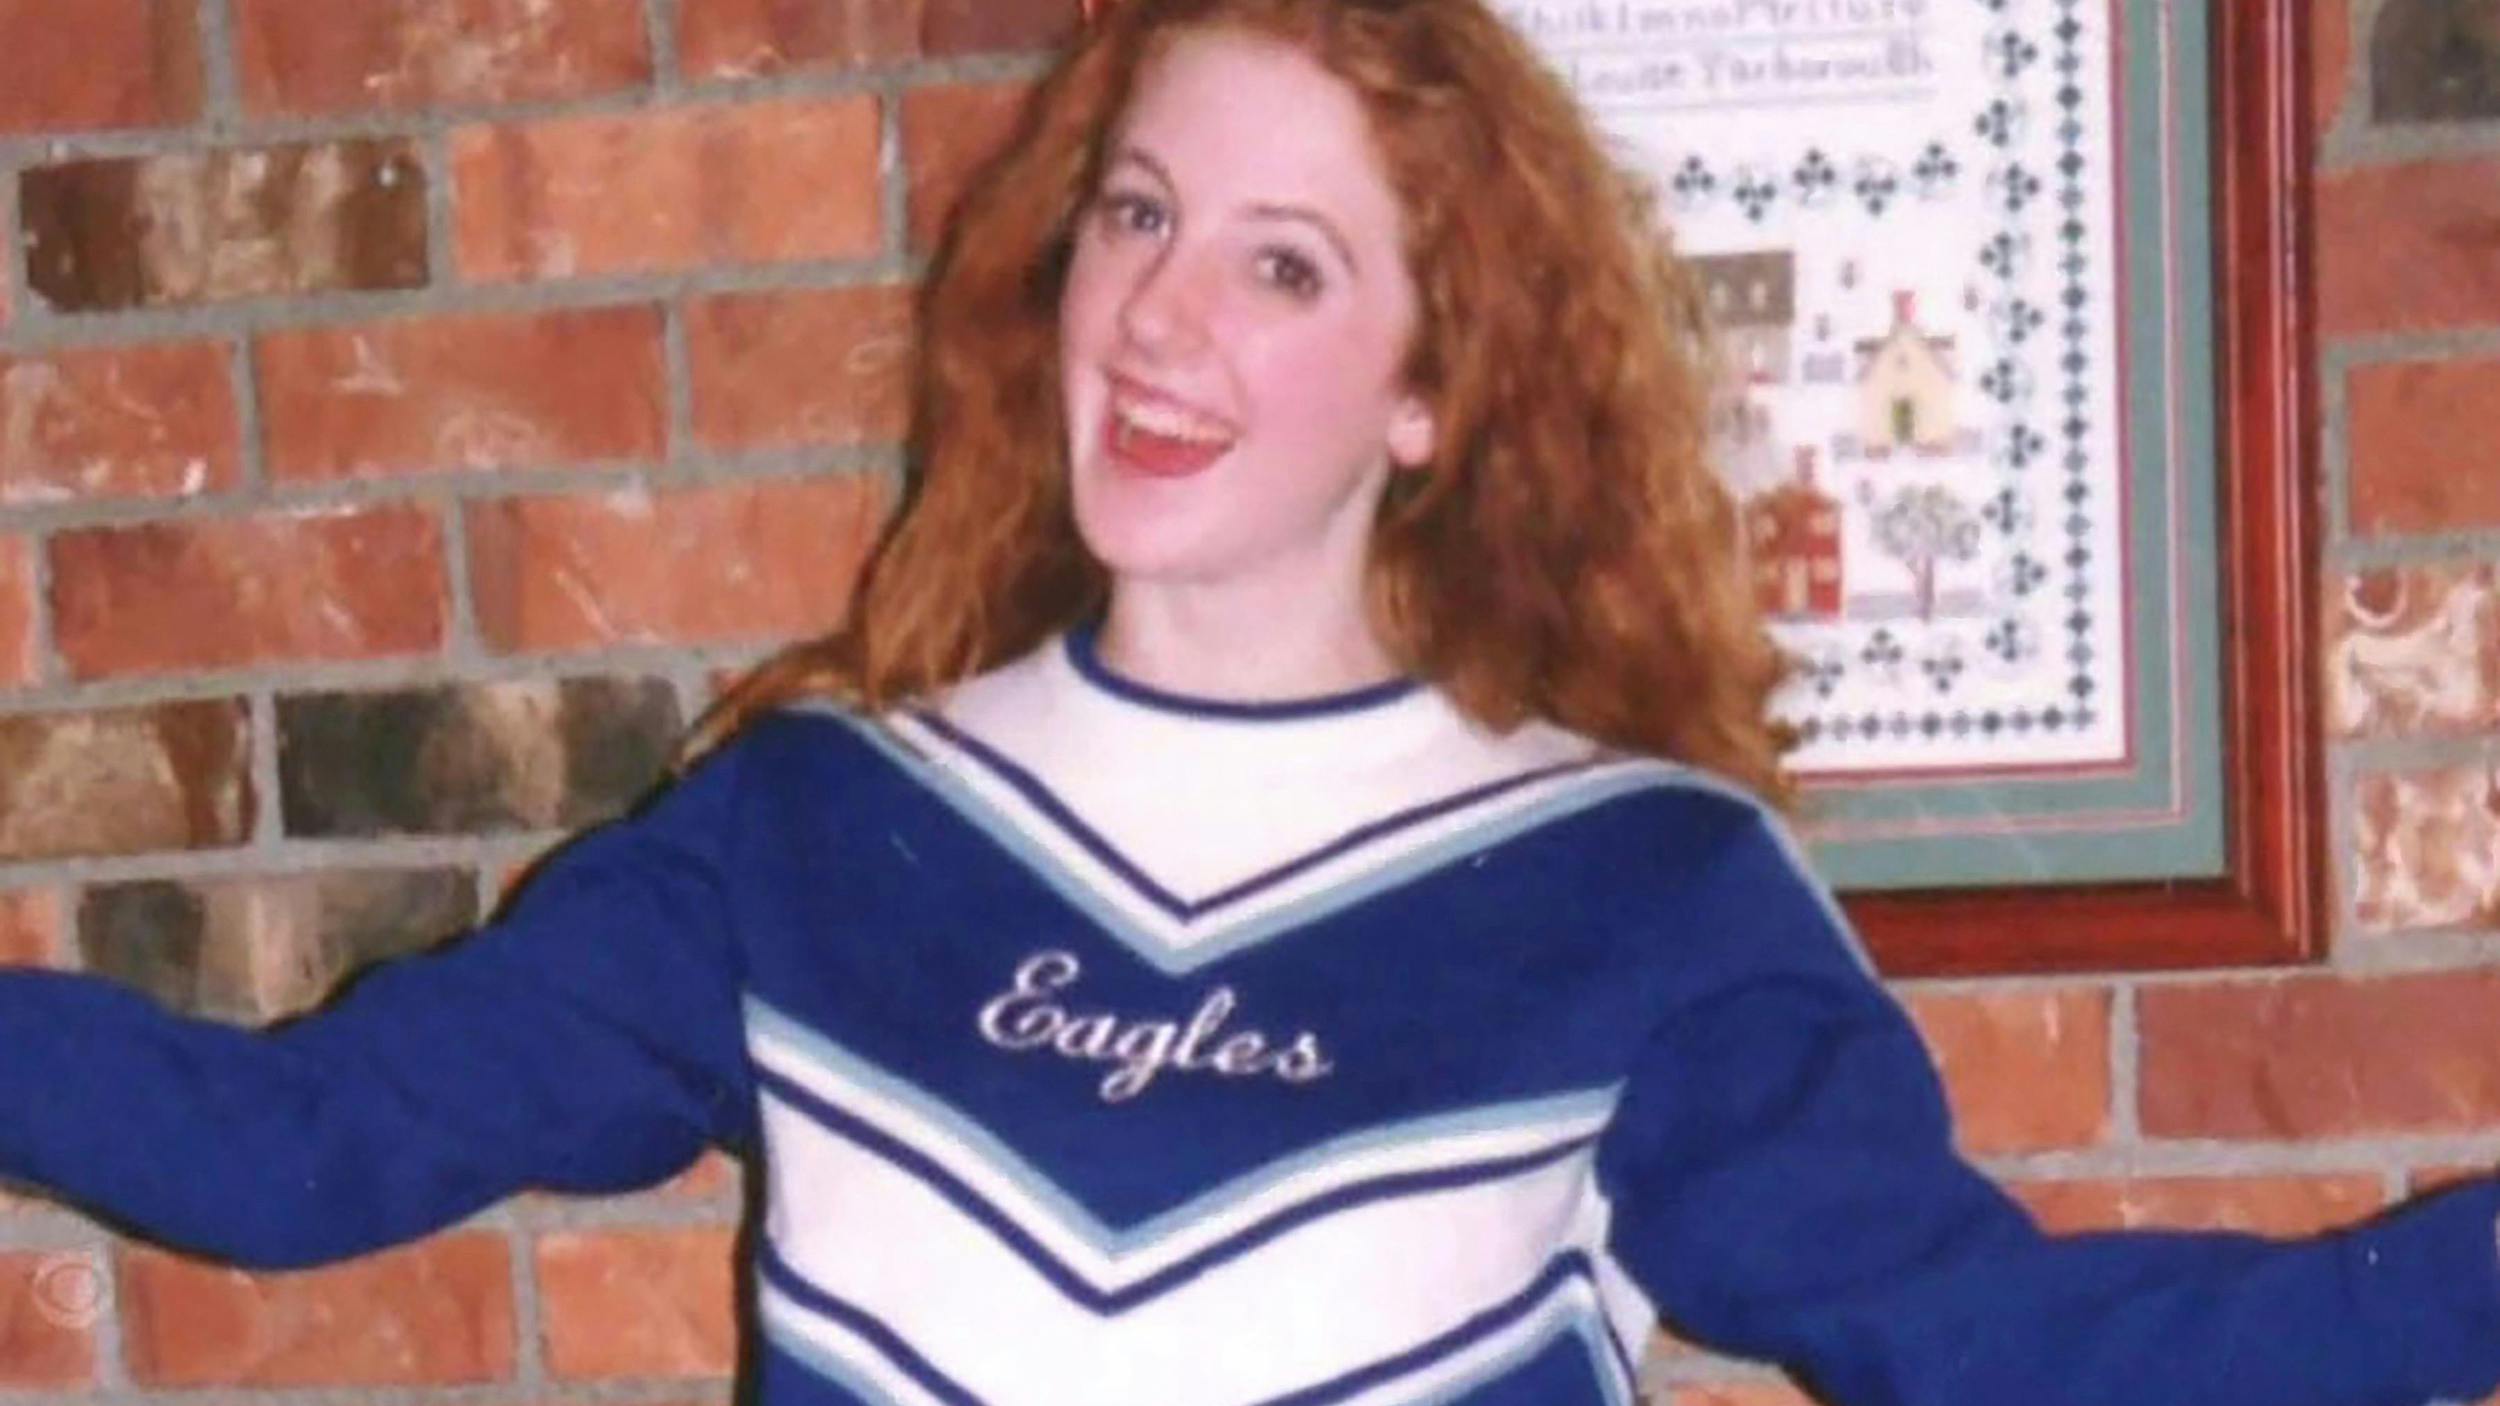 Sarah var vild med at være cheerleader. Her er hun fotograferet i sin uniform.